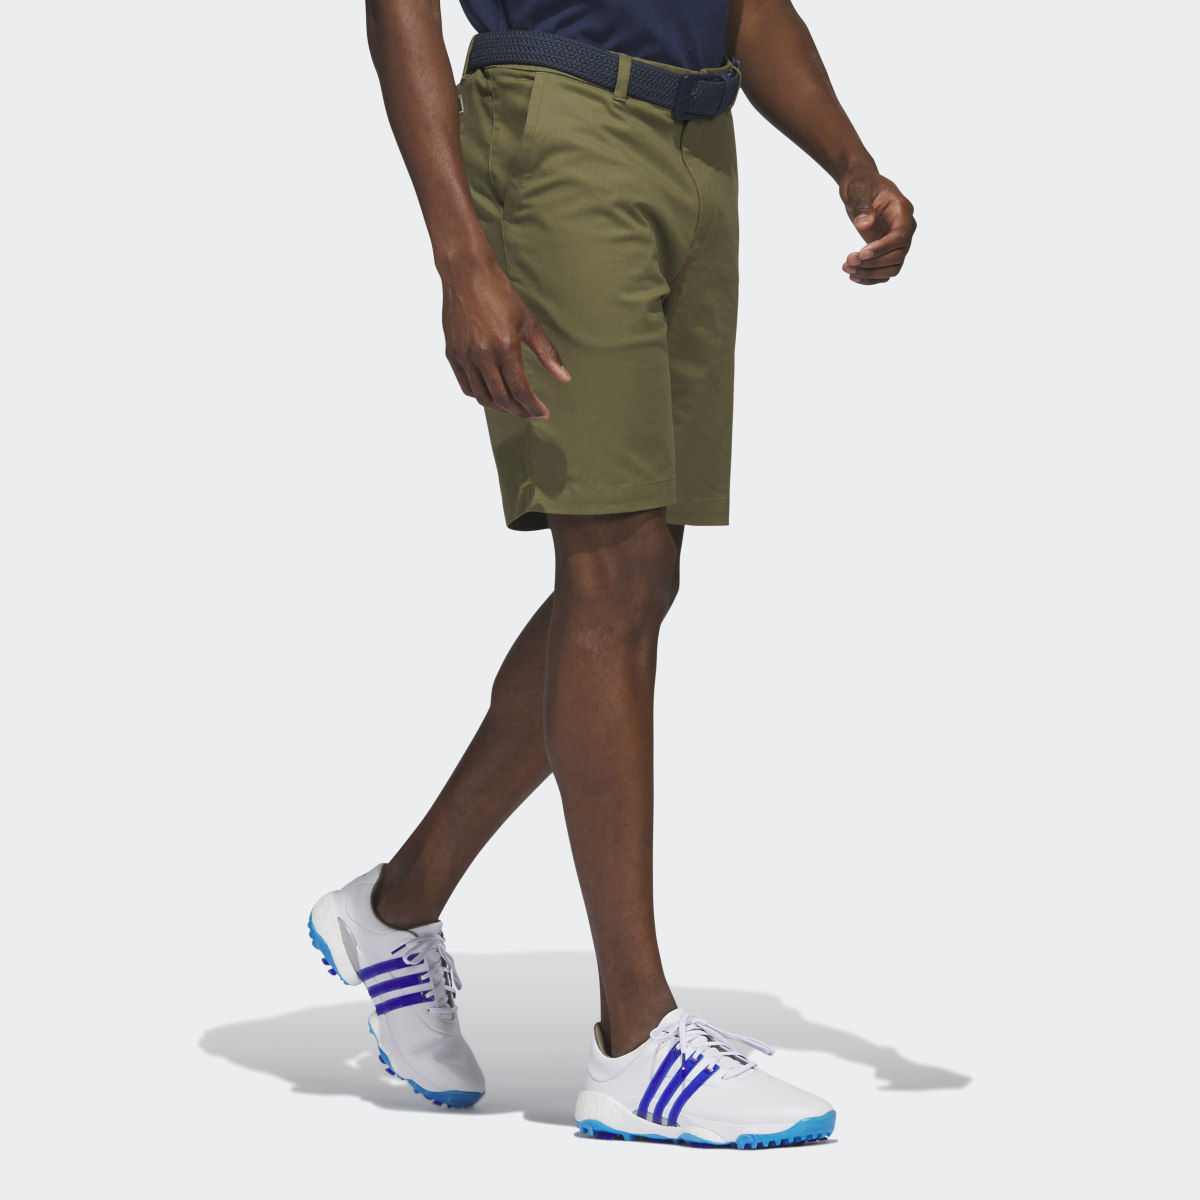 Adidas Go-To 9-Inch Golf Shorts. 4